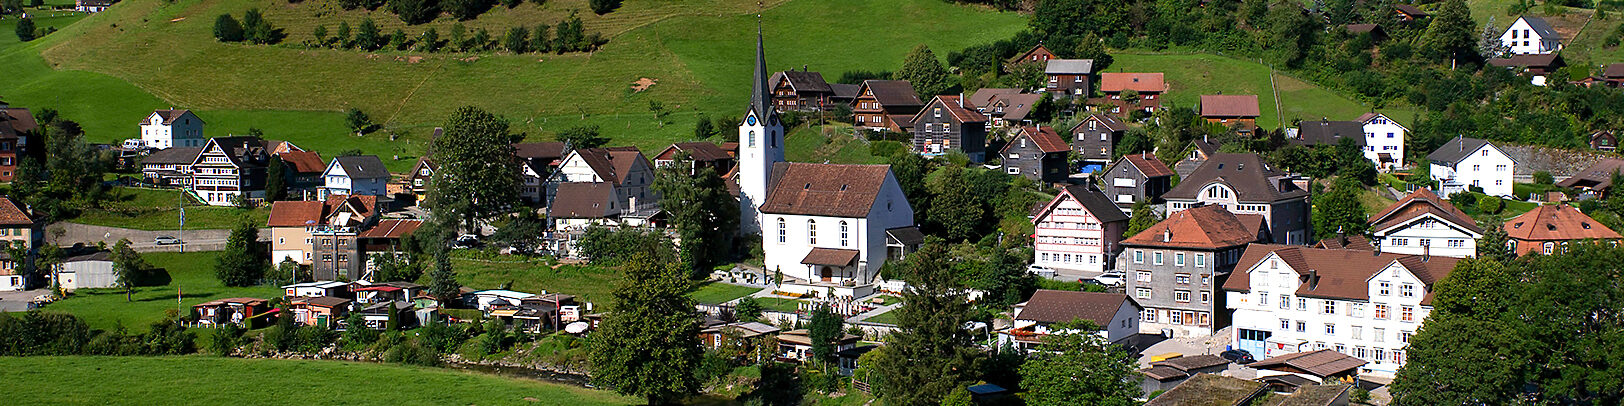 Bildausschnitt Brunnadern mit Kirche